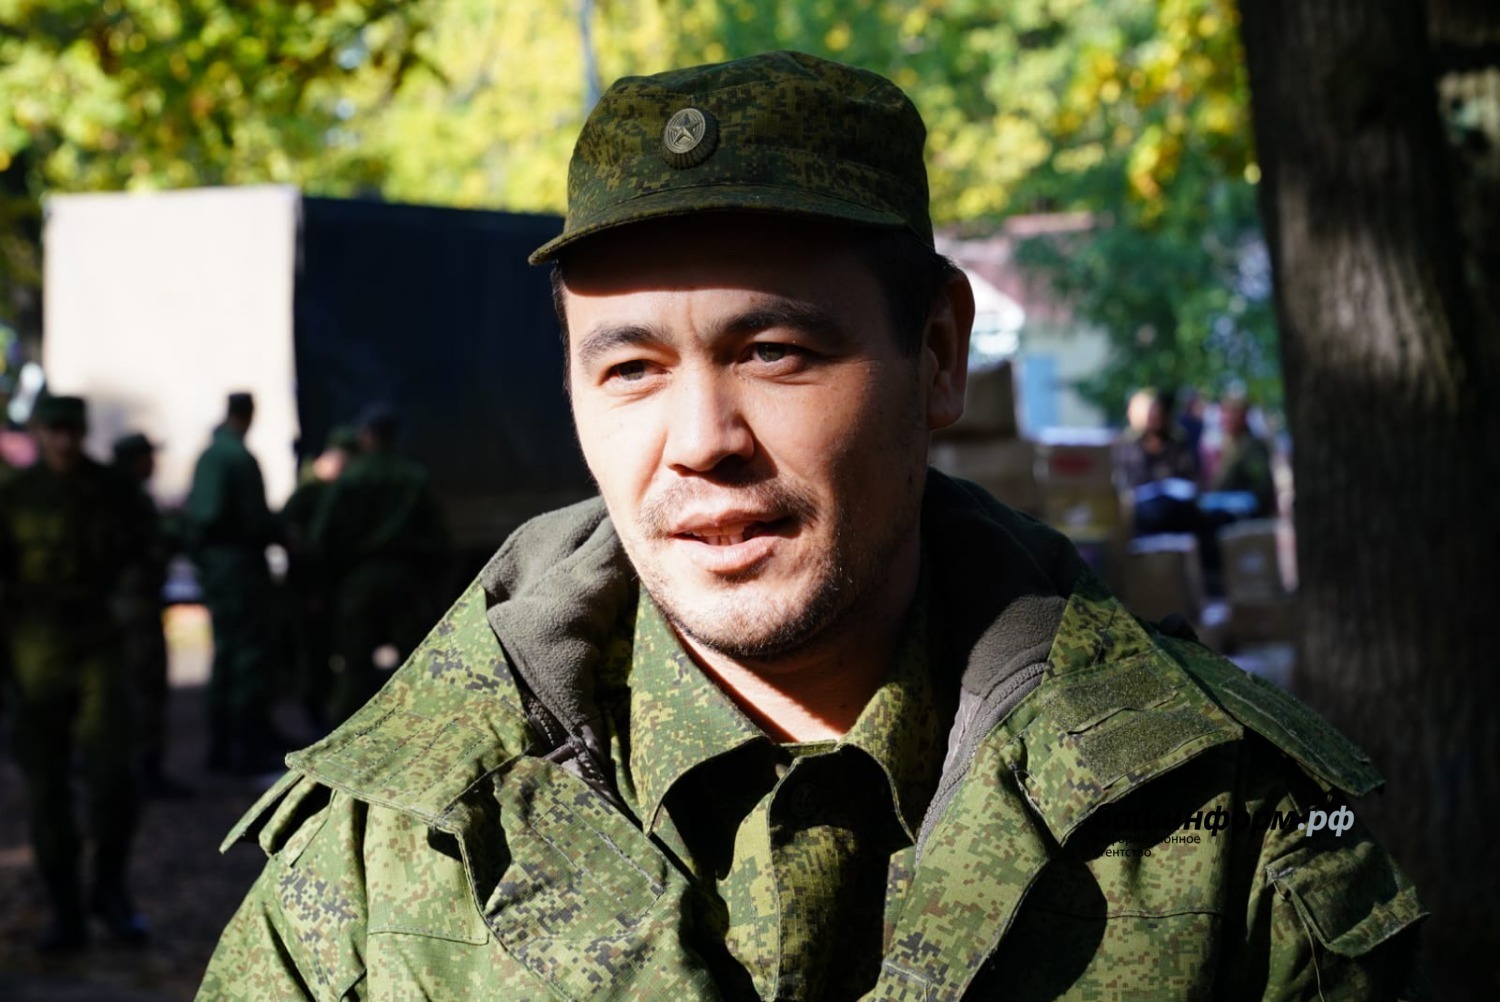 Радий Хабиров посетил место боевого слаживания мобилизованных из Башкирии в Саратовской области